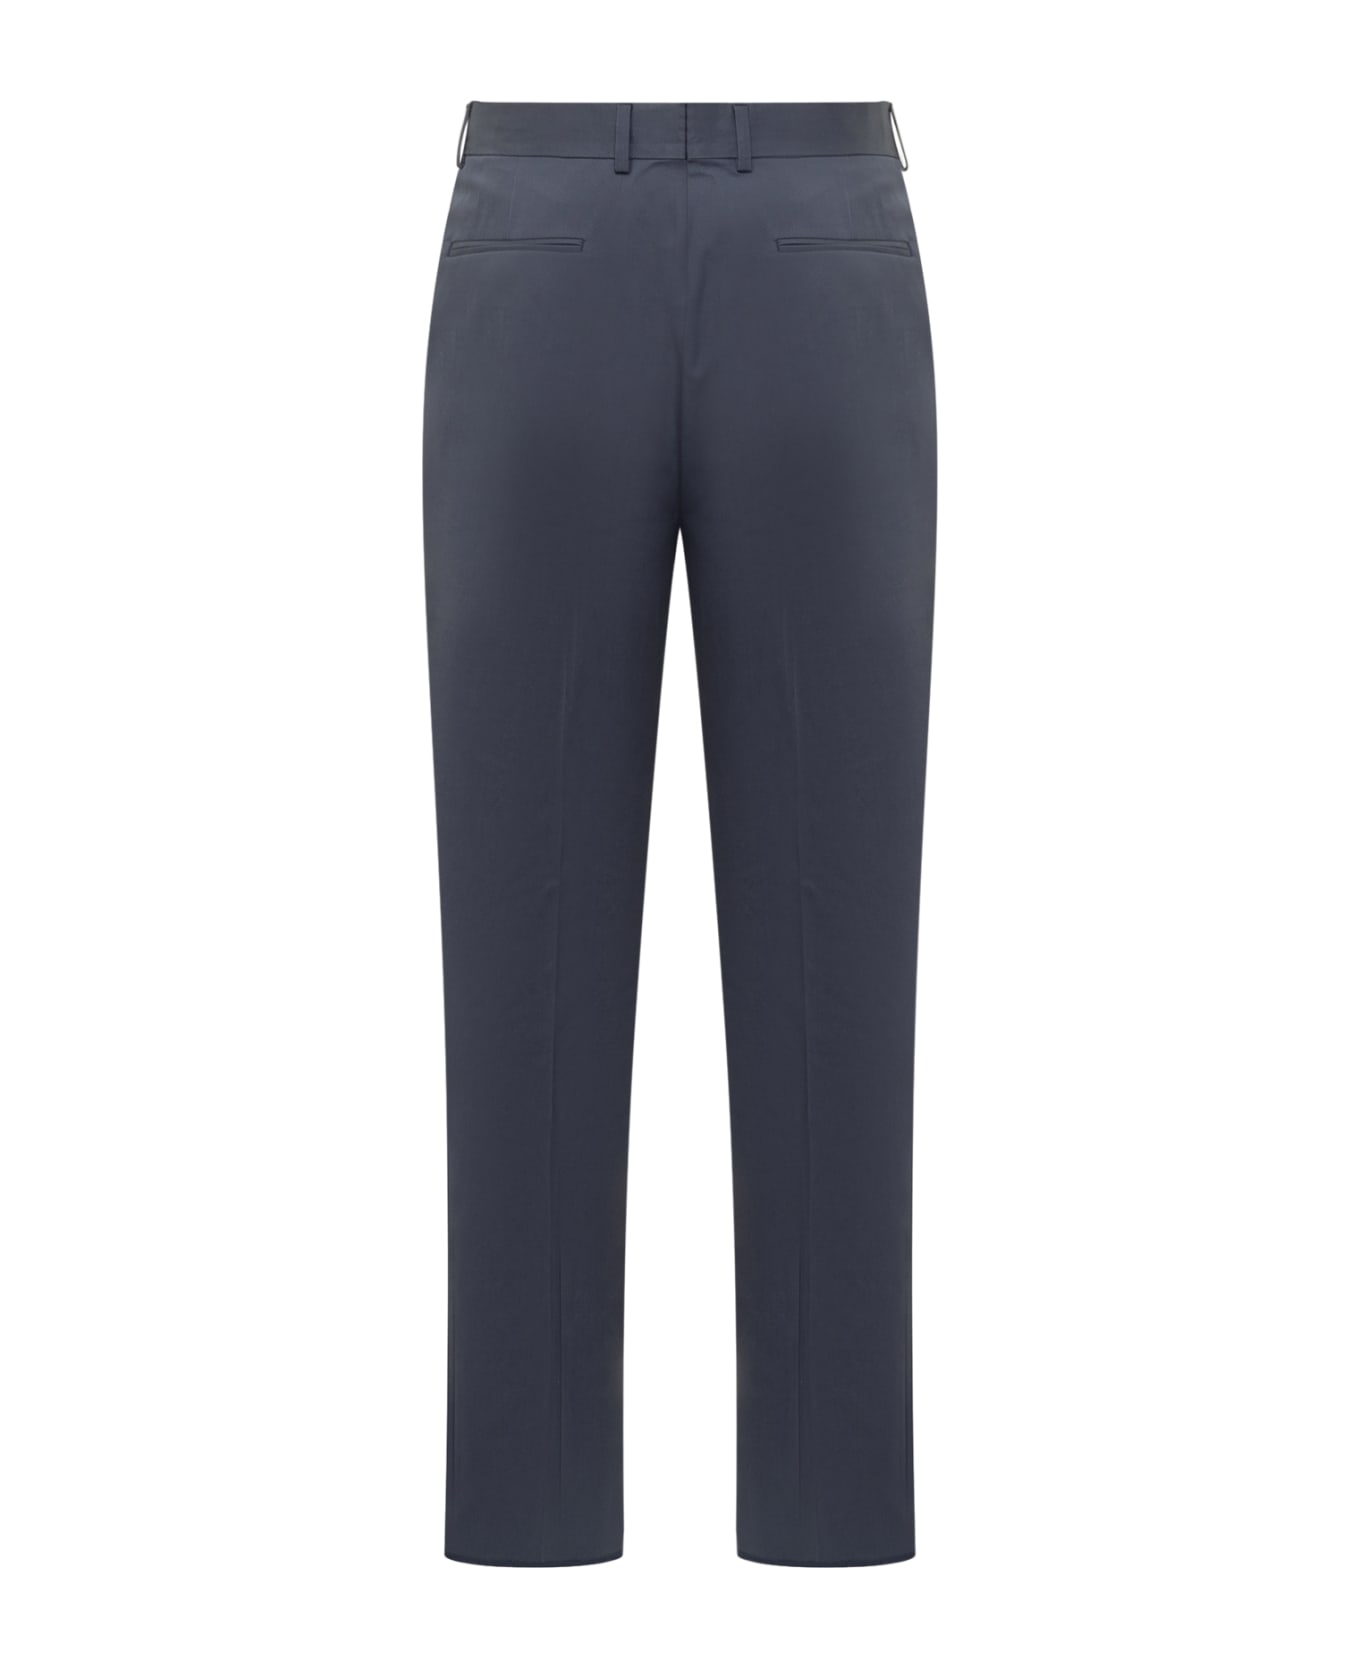 Zegna Premium Trousers - 715F05A7 BLU